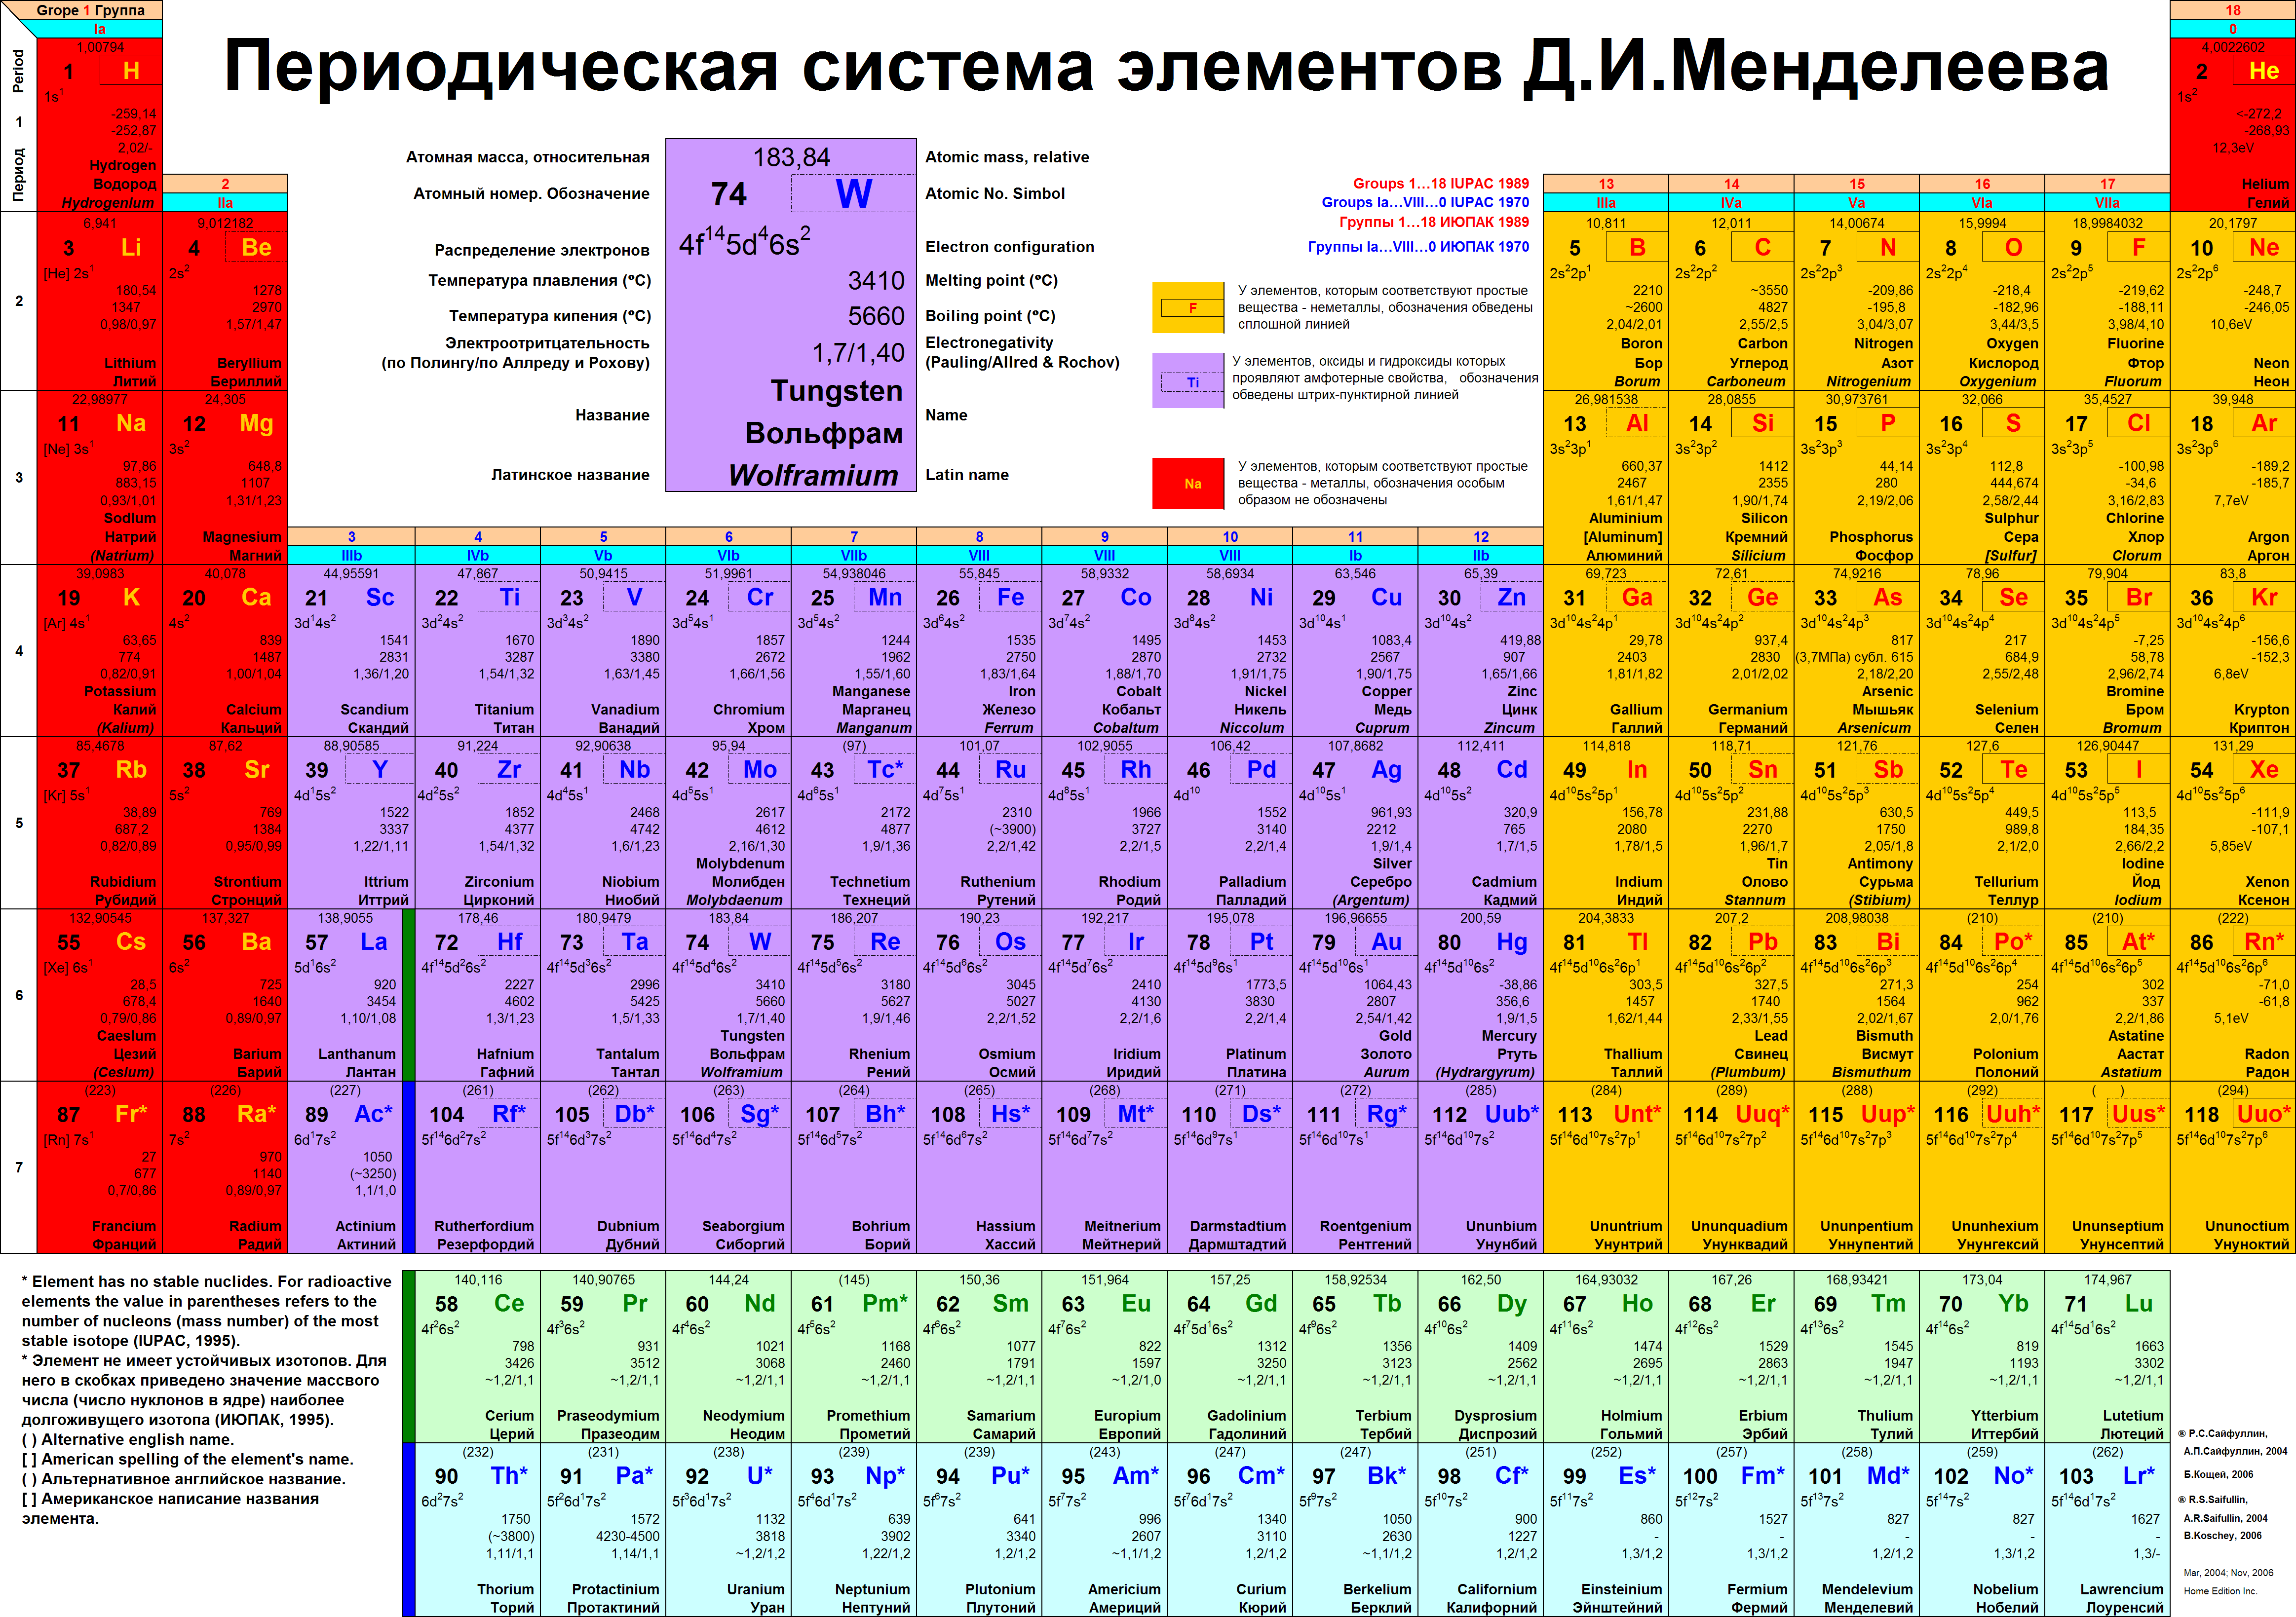 Количество этого элемента было. Таблица Менделеева 1975 года. Современная таблица Менделеева 118 элементов. Периодическая система химических элементов д.и Менделеева полная. Длинная форма периодической таблицы Менделеева.